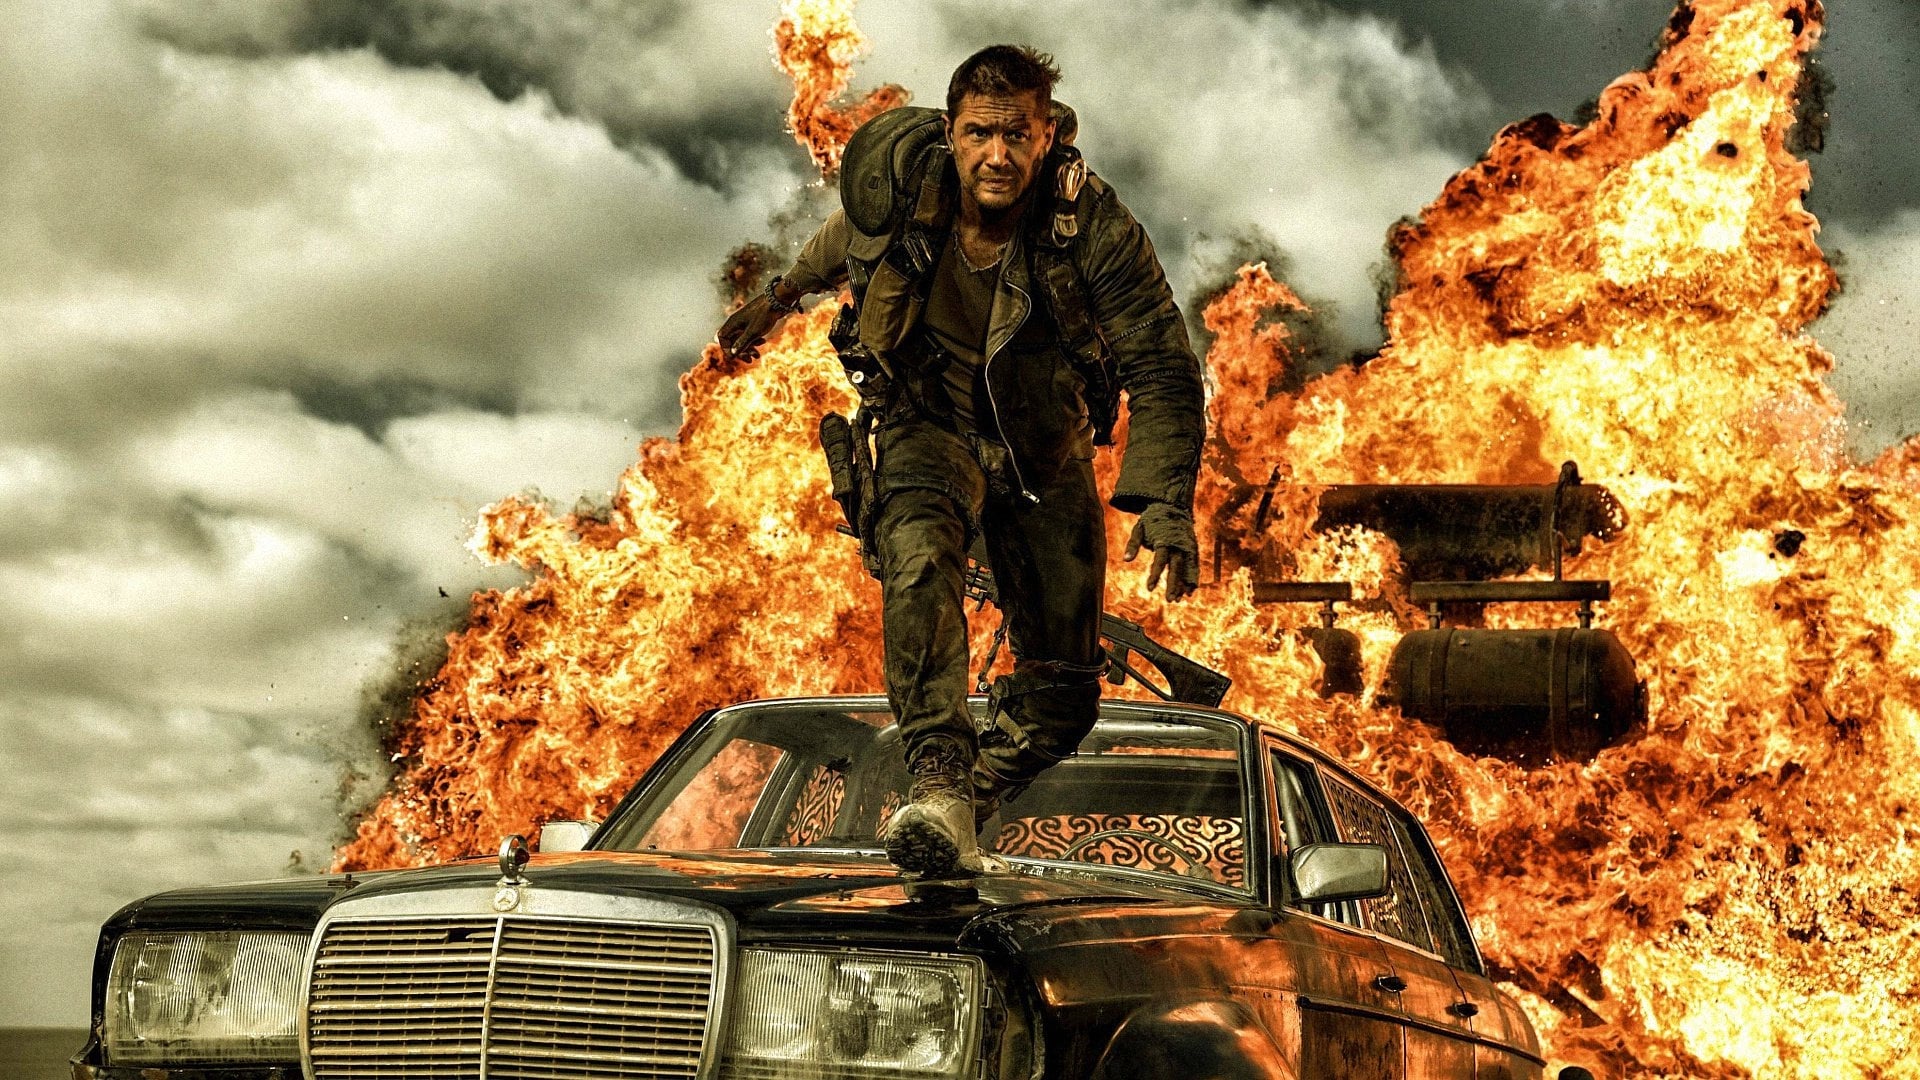 Image du film Mad Max : Fury Road - Black & Chrome by1zgyzpuymvwxny594oiofmdabjpg